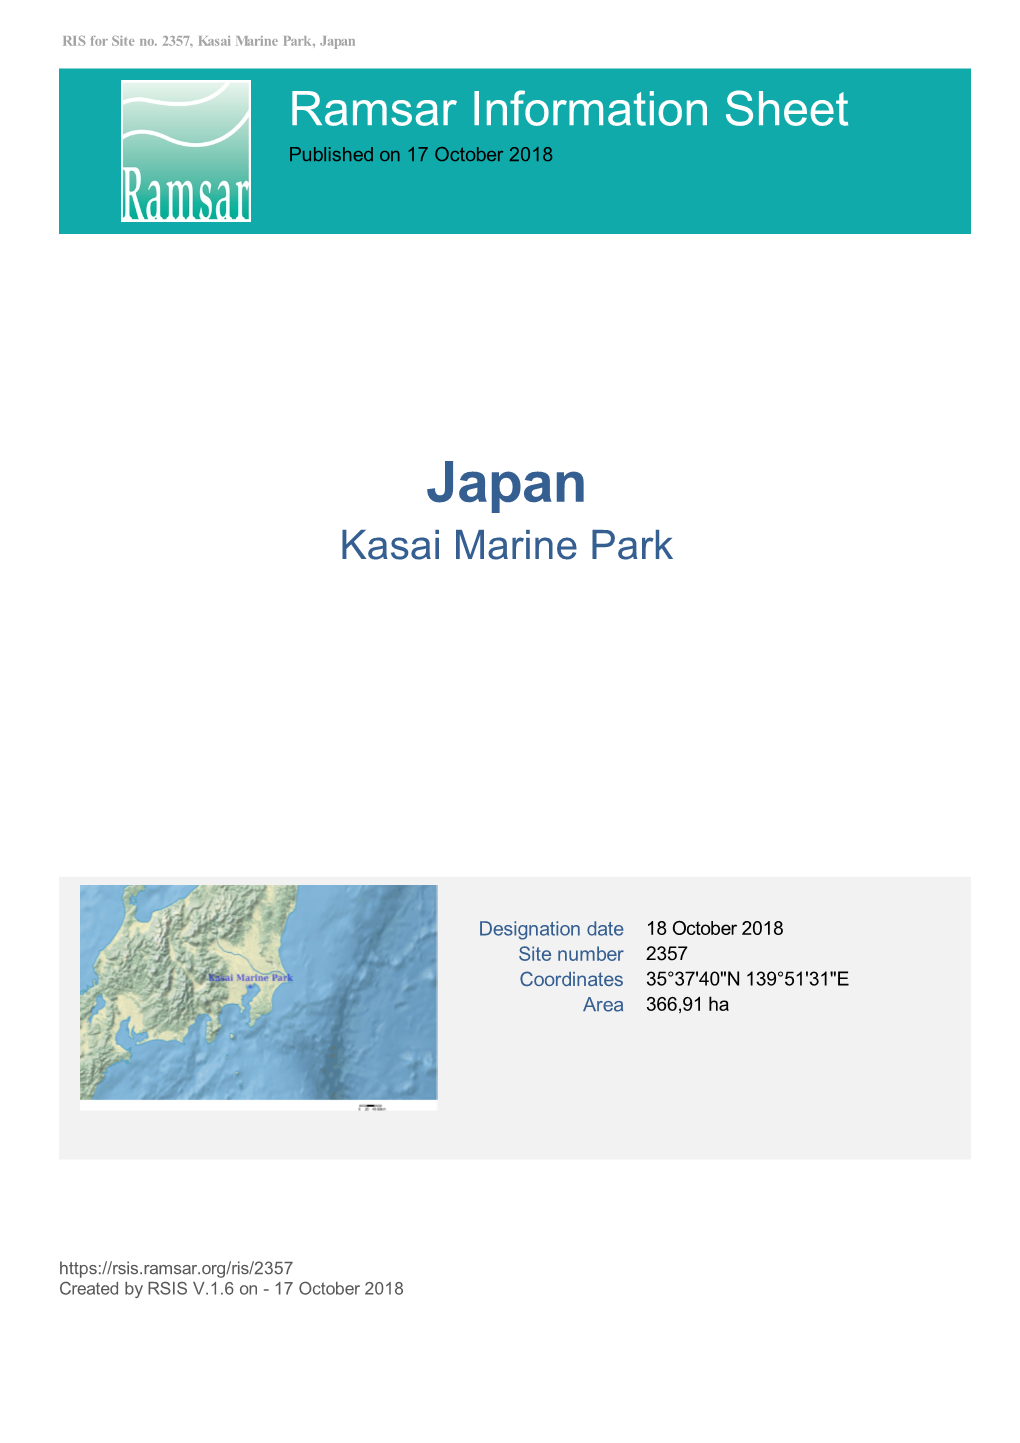 Ramsar Information Sheet Published on 17 October 2018